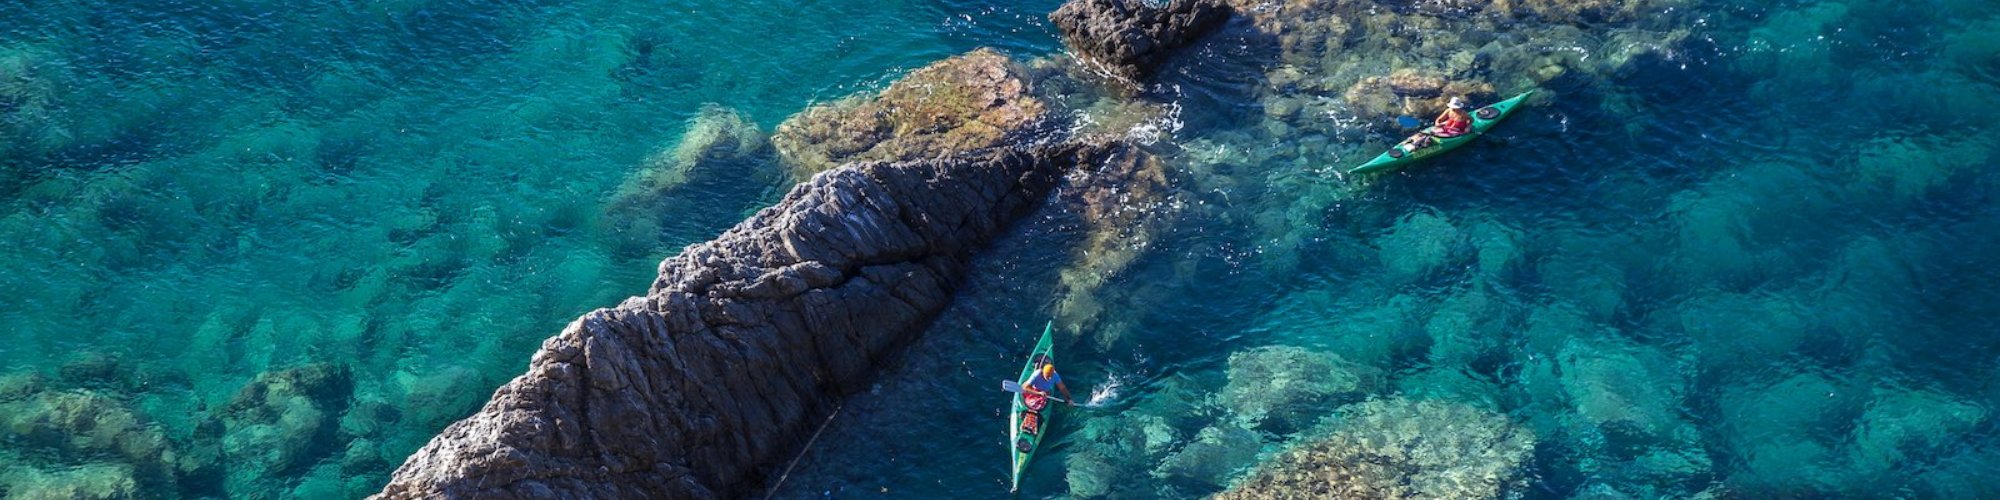 Isola d'Elba kayak